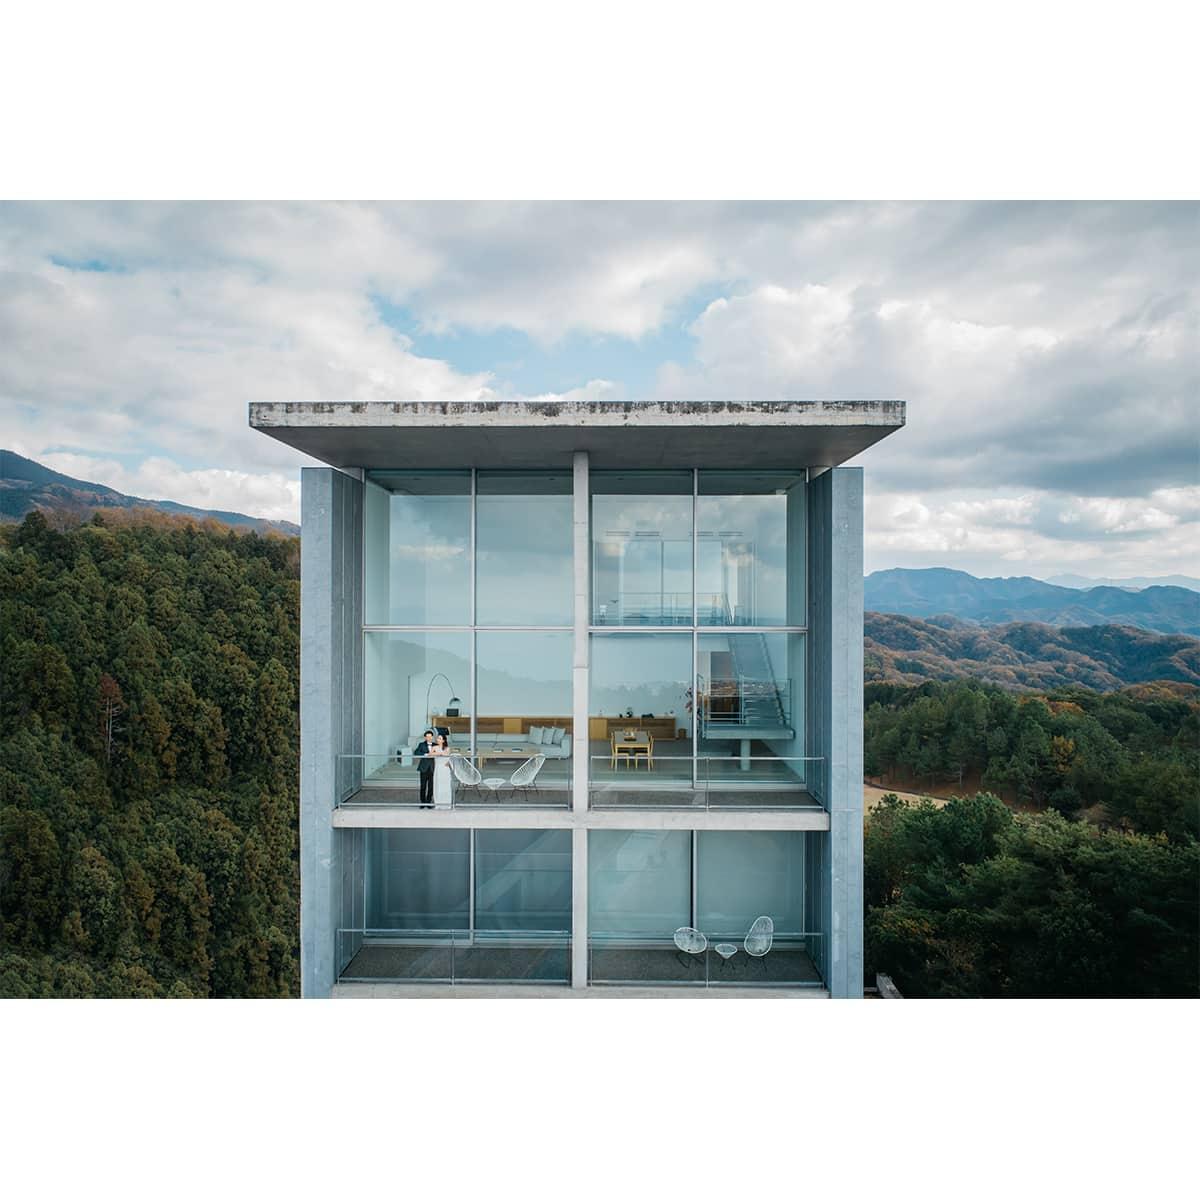 「花ノ結婚式屋」がプロデュースする新しい家族婚。安藤忠雄建築で特別で静謐なひと時を - Slide:2